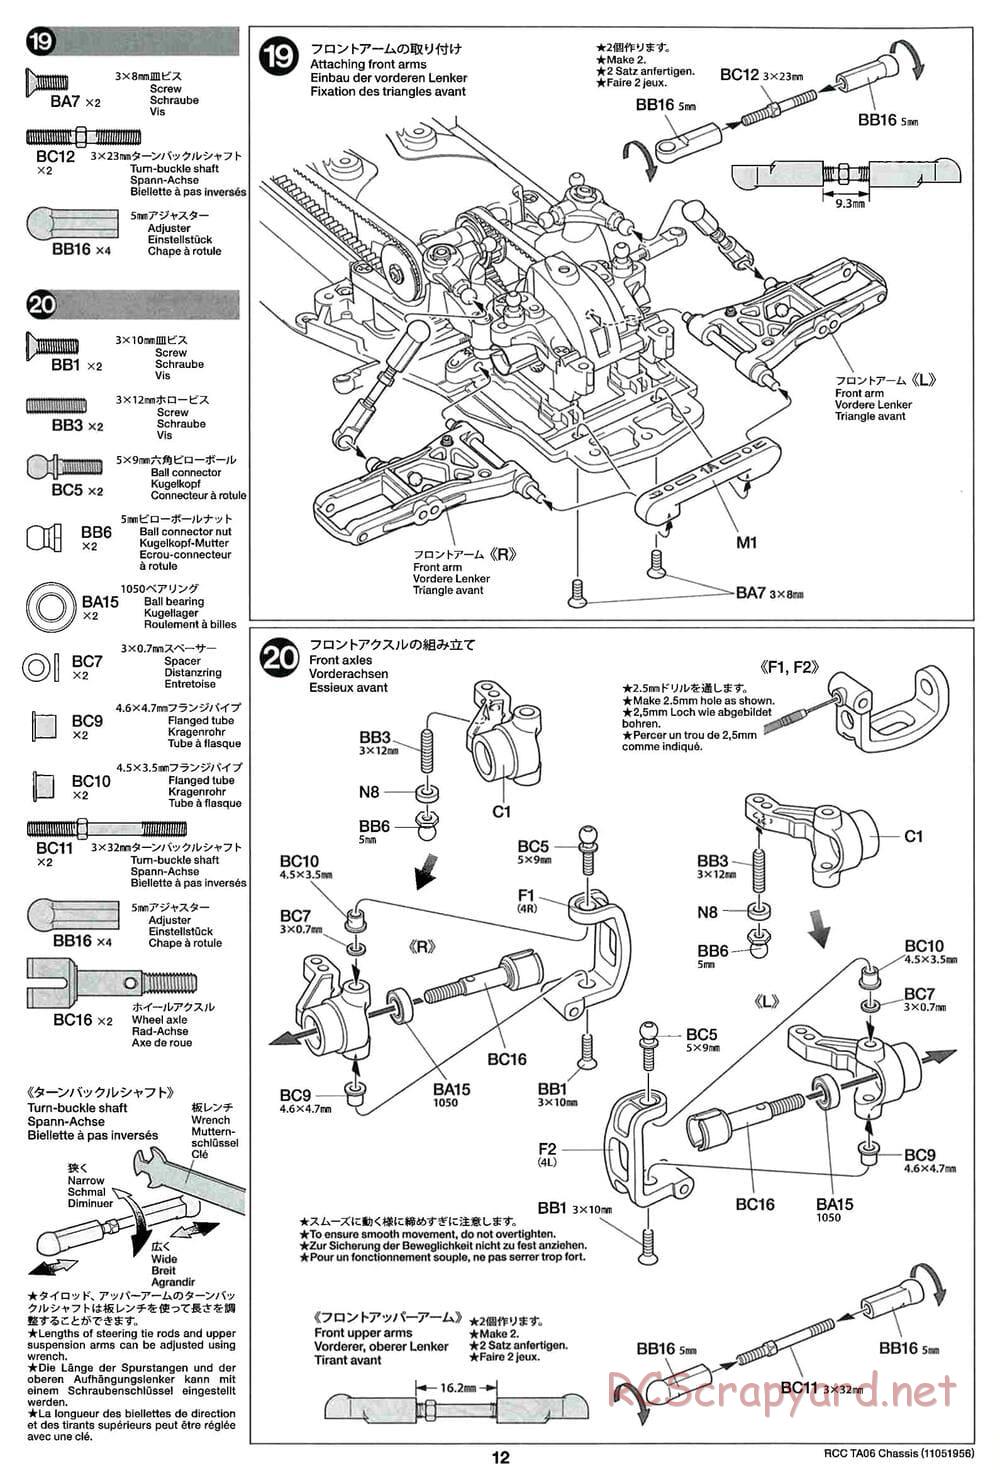 Tamiya - TA06 Chassis - Manual - Page 12